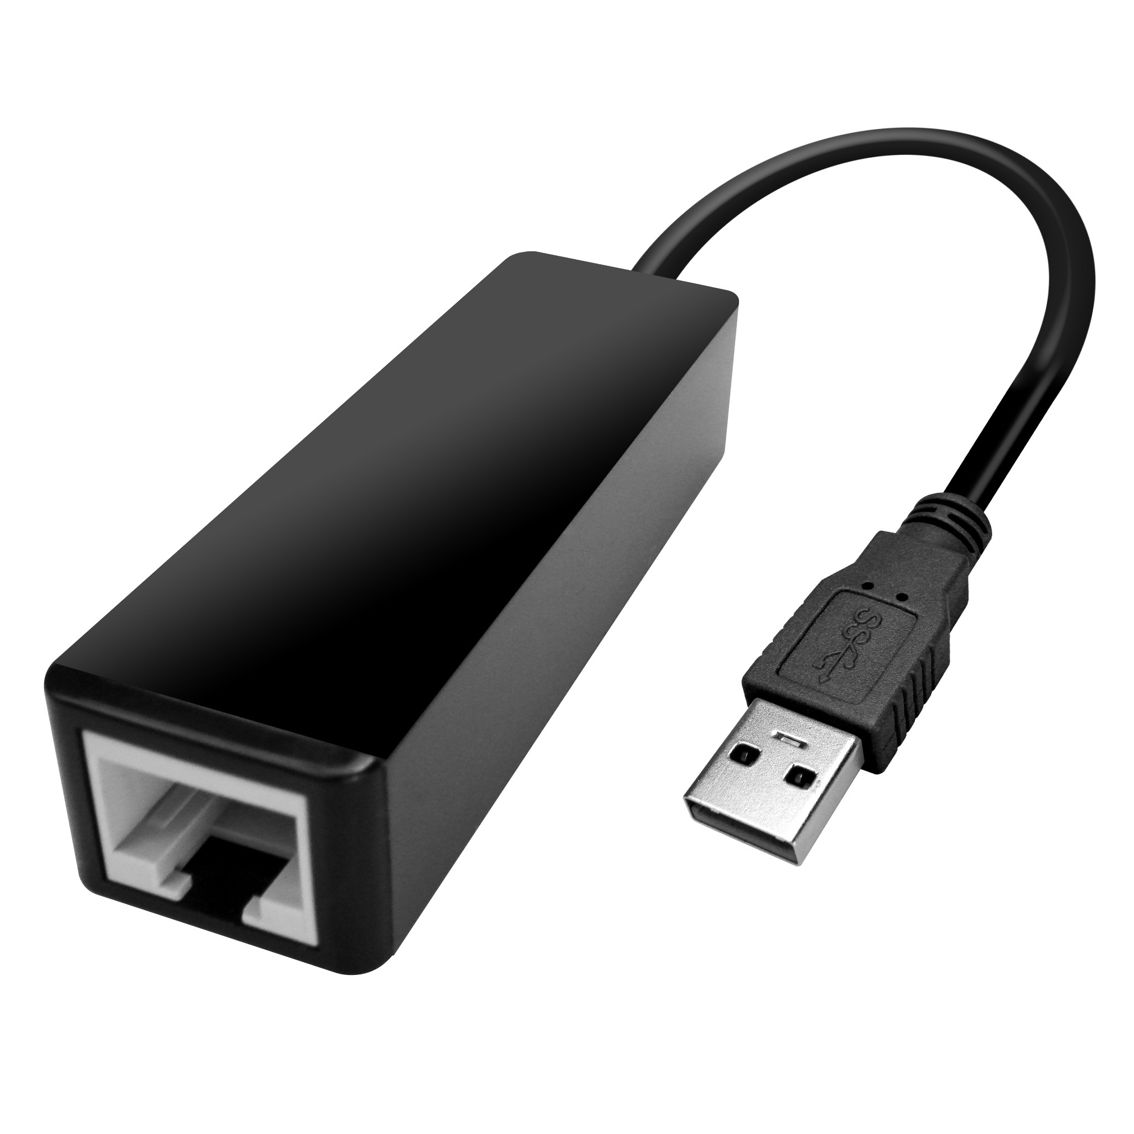 Adaptor USB 2.0 to Gigabit 0.2m PT 10/100/1000Μ 480 Mbit/s